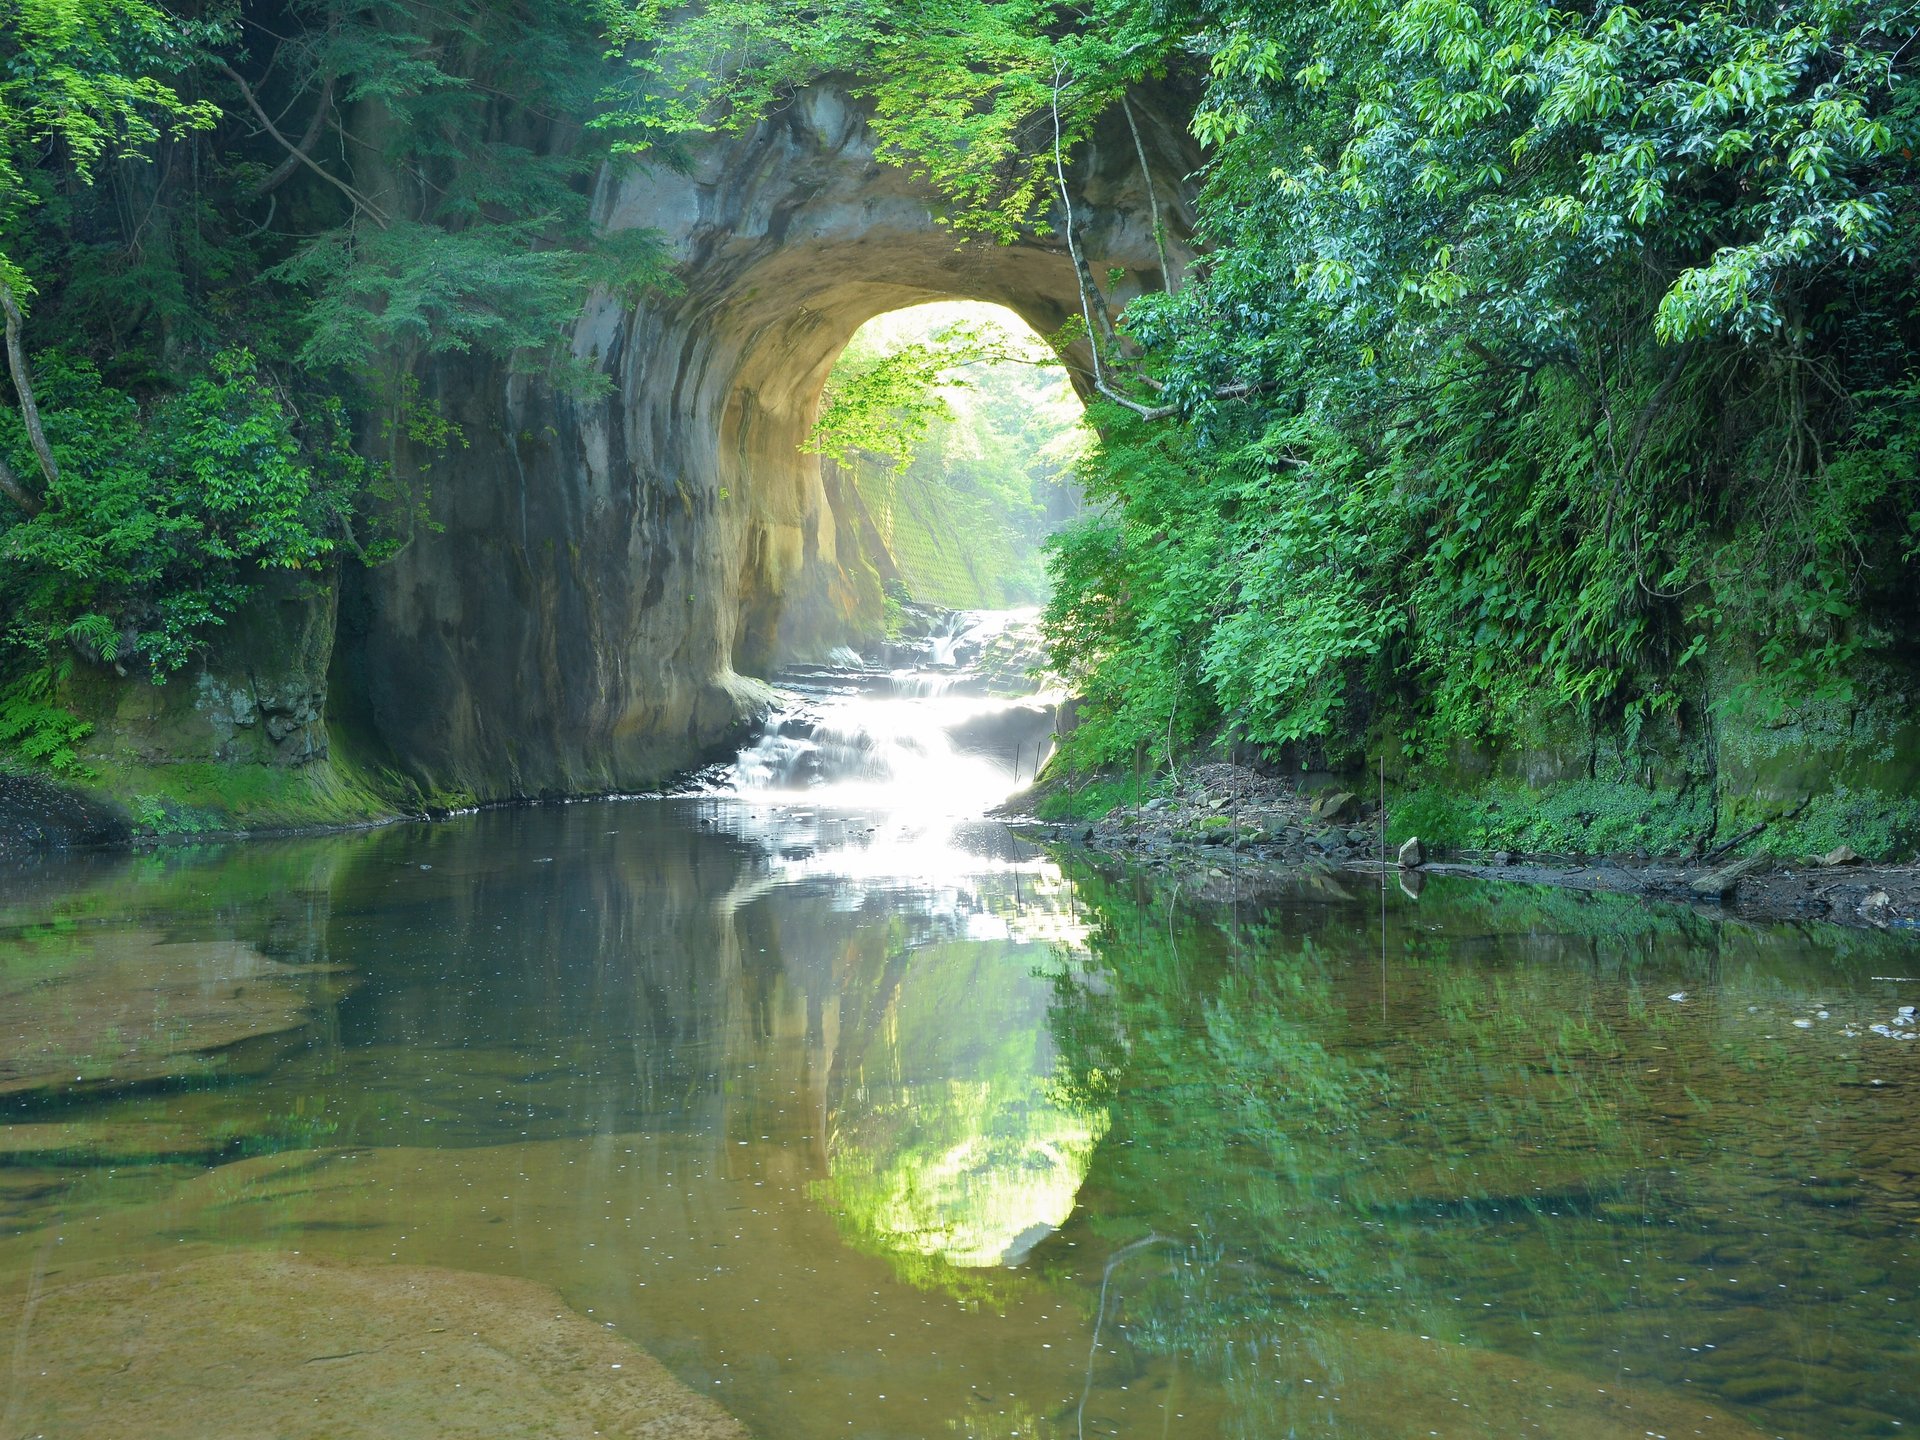 感動すること間違いなし！千葉の秘境『濃溝の滝』と千葉県民おすすめドライブプラン